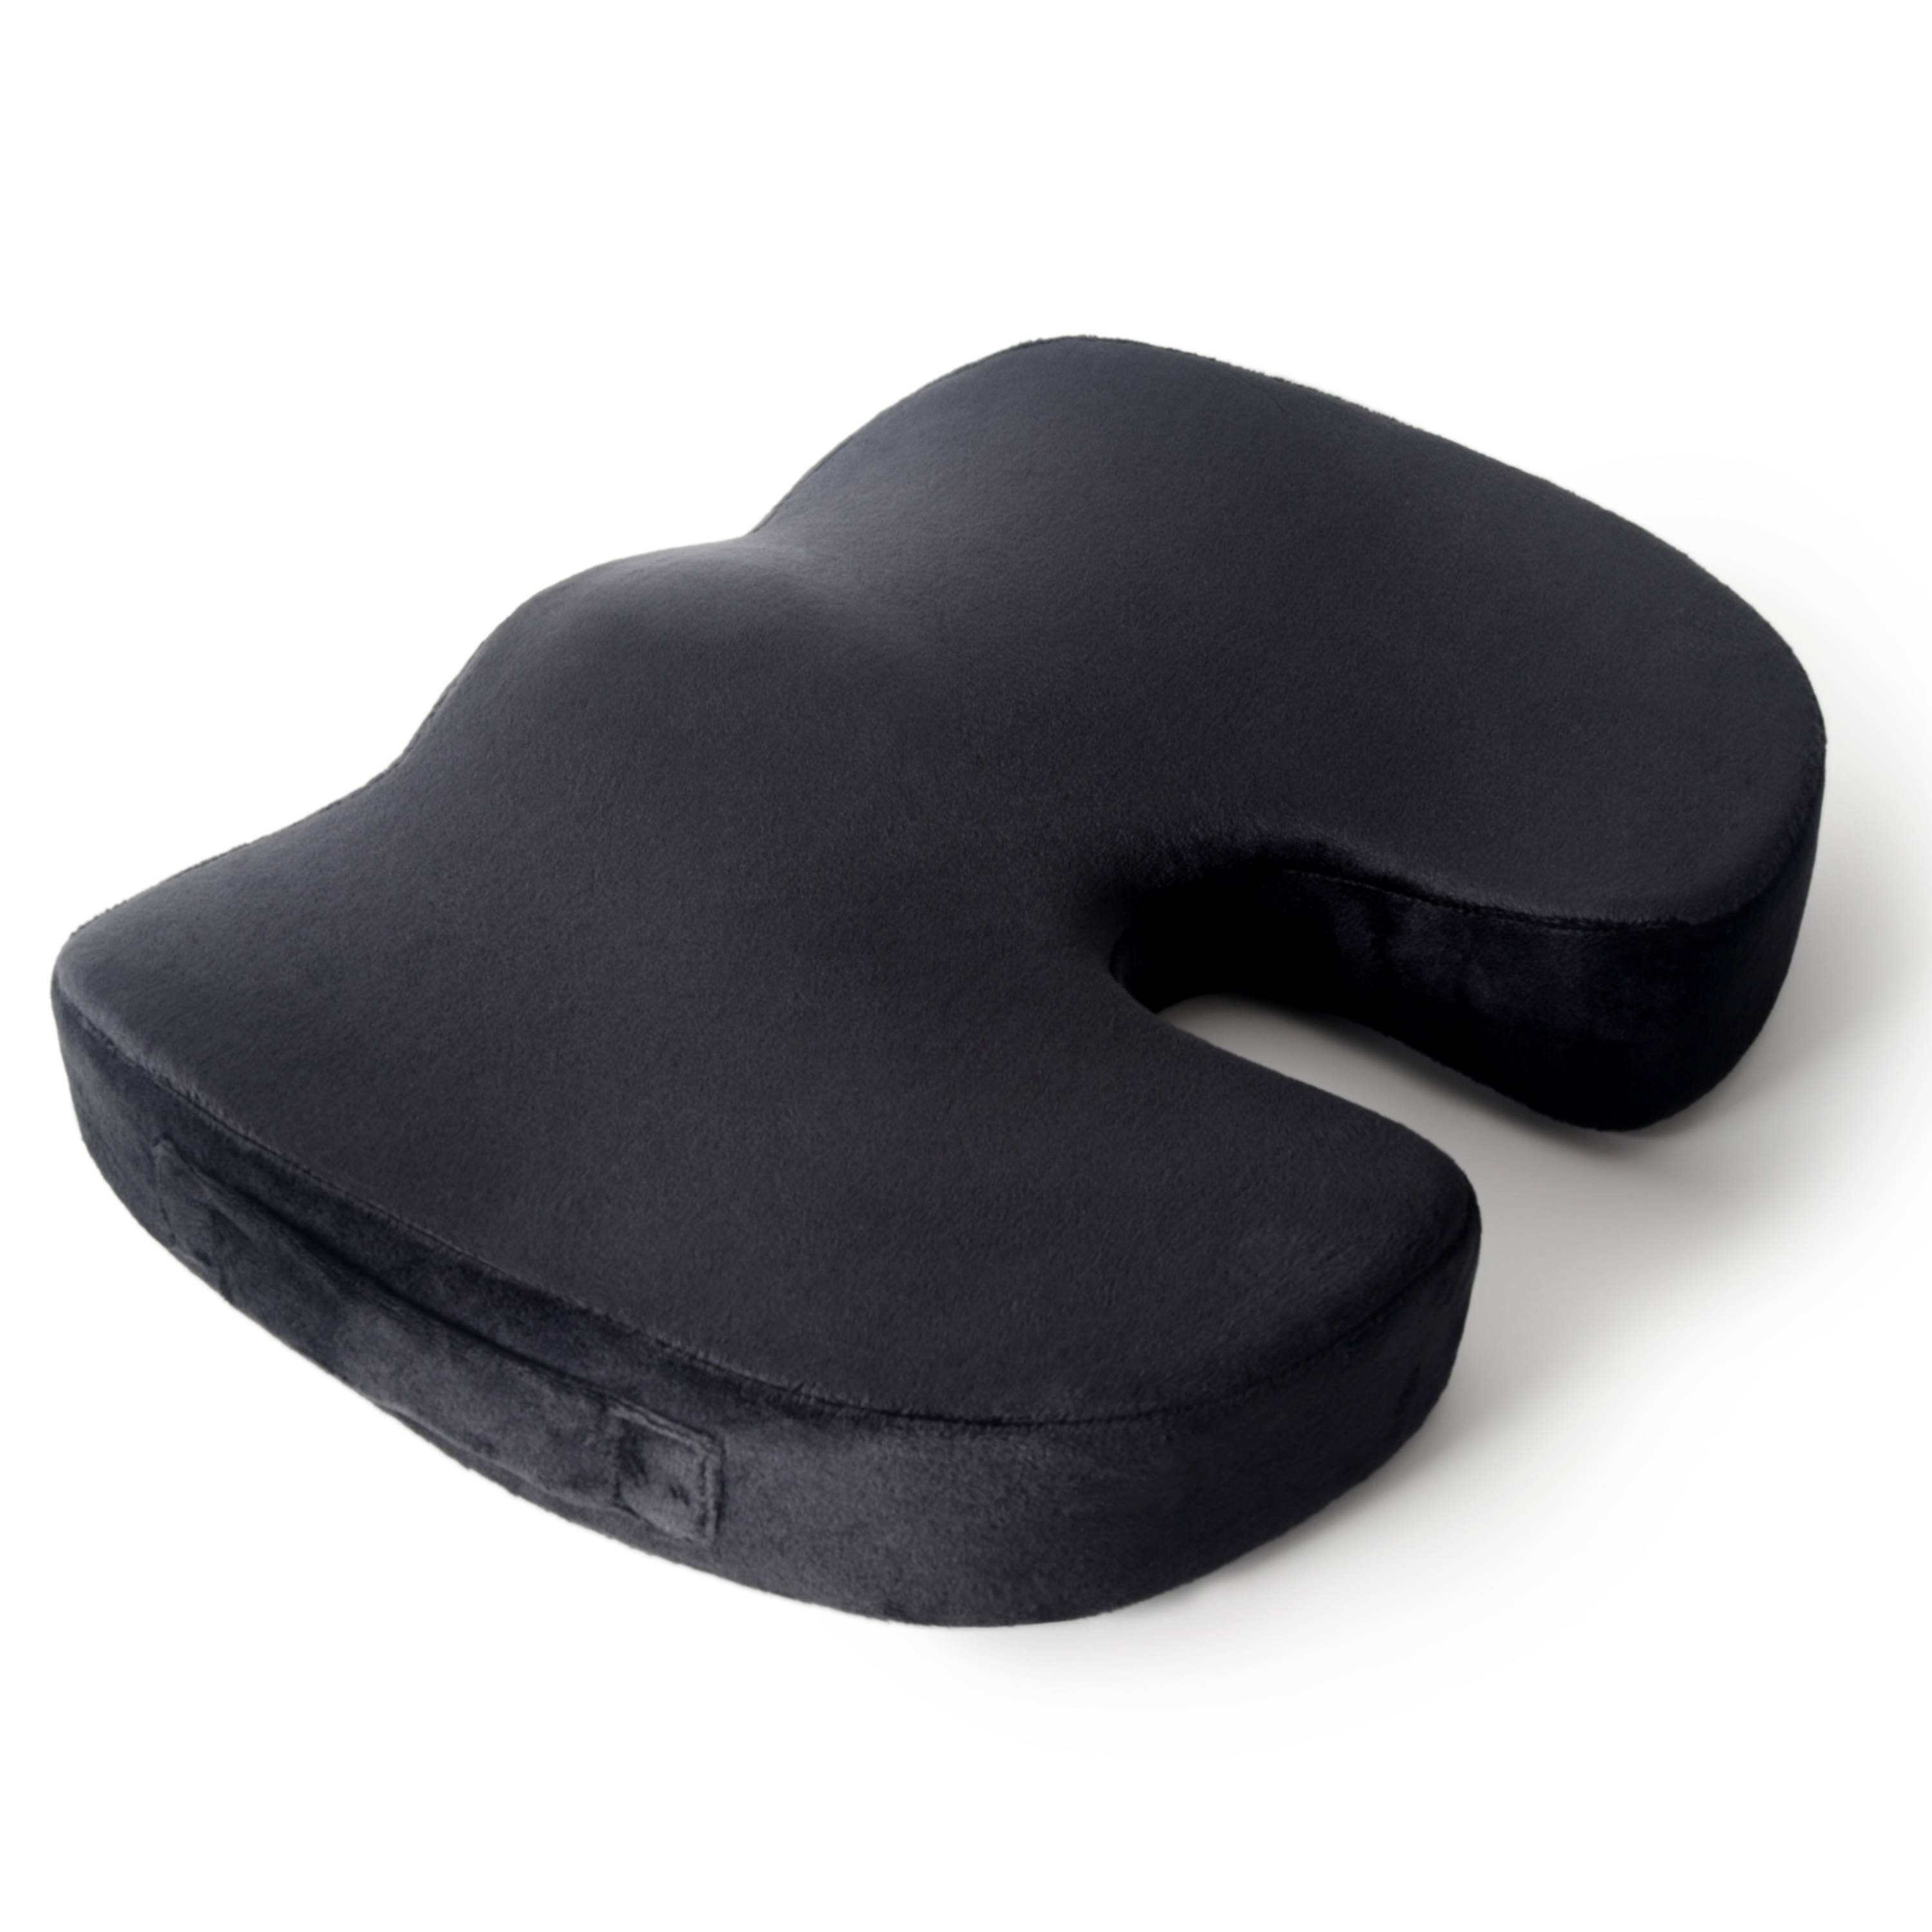 RICOO Haltungskissen SK-U0120, Ergonomisches Sitzkissen orthopädisches Kissen für Auto & Büro Stuhl